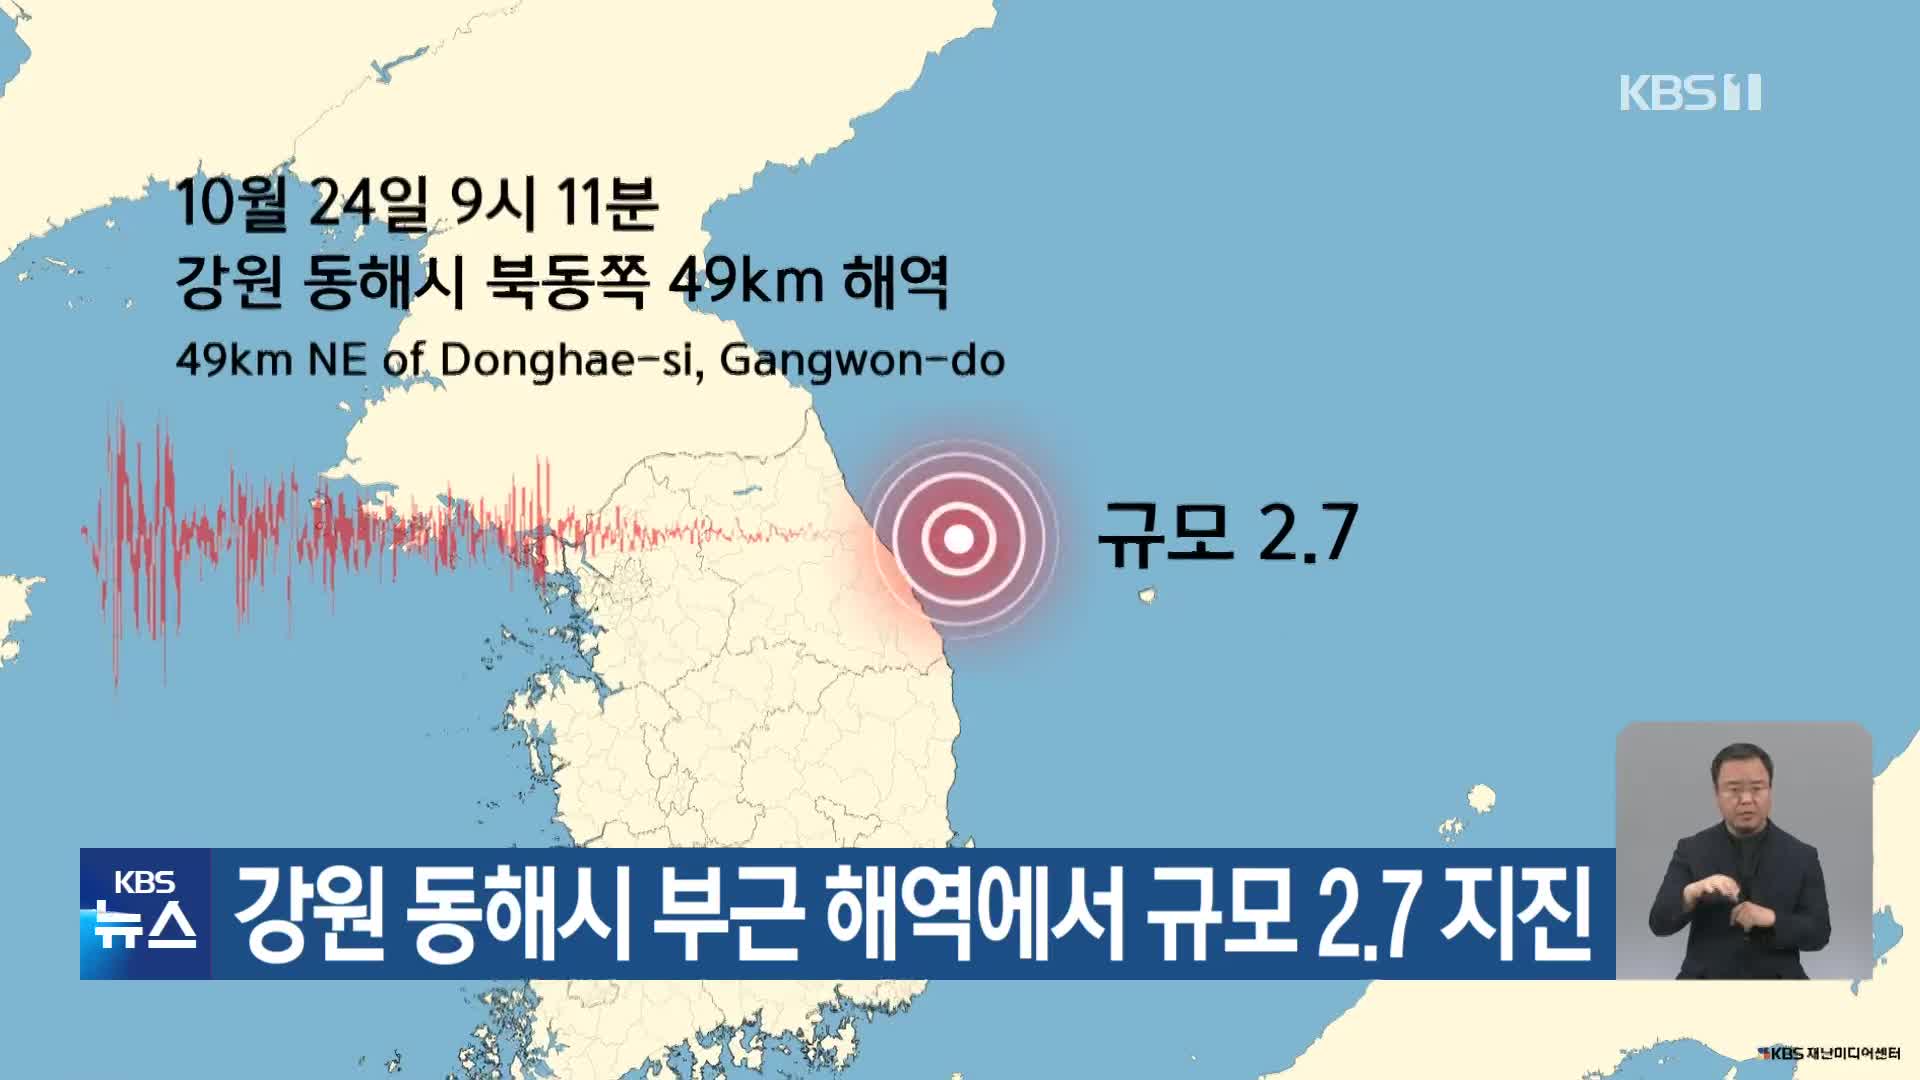 강원 동해시 부근 해역에서 규모 2.7 지진